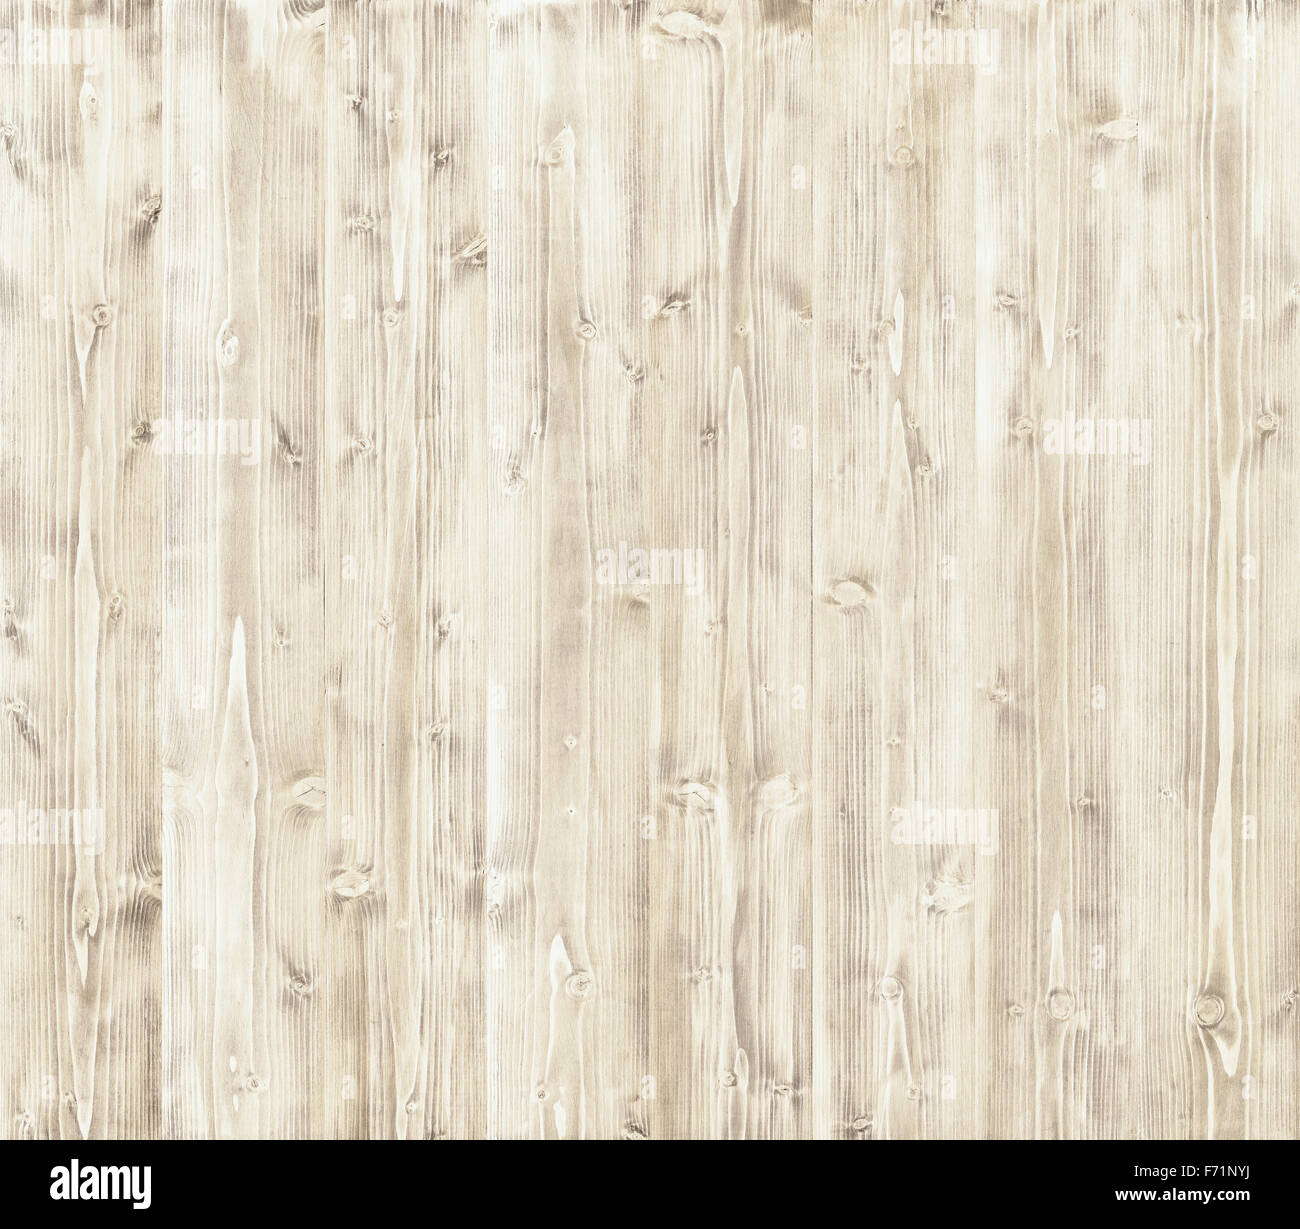 Ván gỗ nhẹ: Ván gỗ nhẹ mang lại cho không gian của bạn sự ấm áp và sự dịu nhẹ. Nhấp vào hình ảnh để tìm hiểu thêm về cách sử dụng ván gỗ nhẹ để trang trí cho không gian sống của bạn.